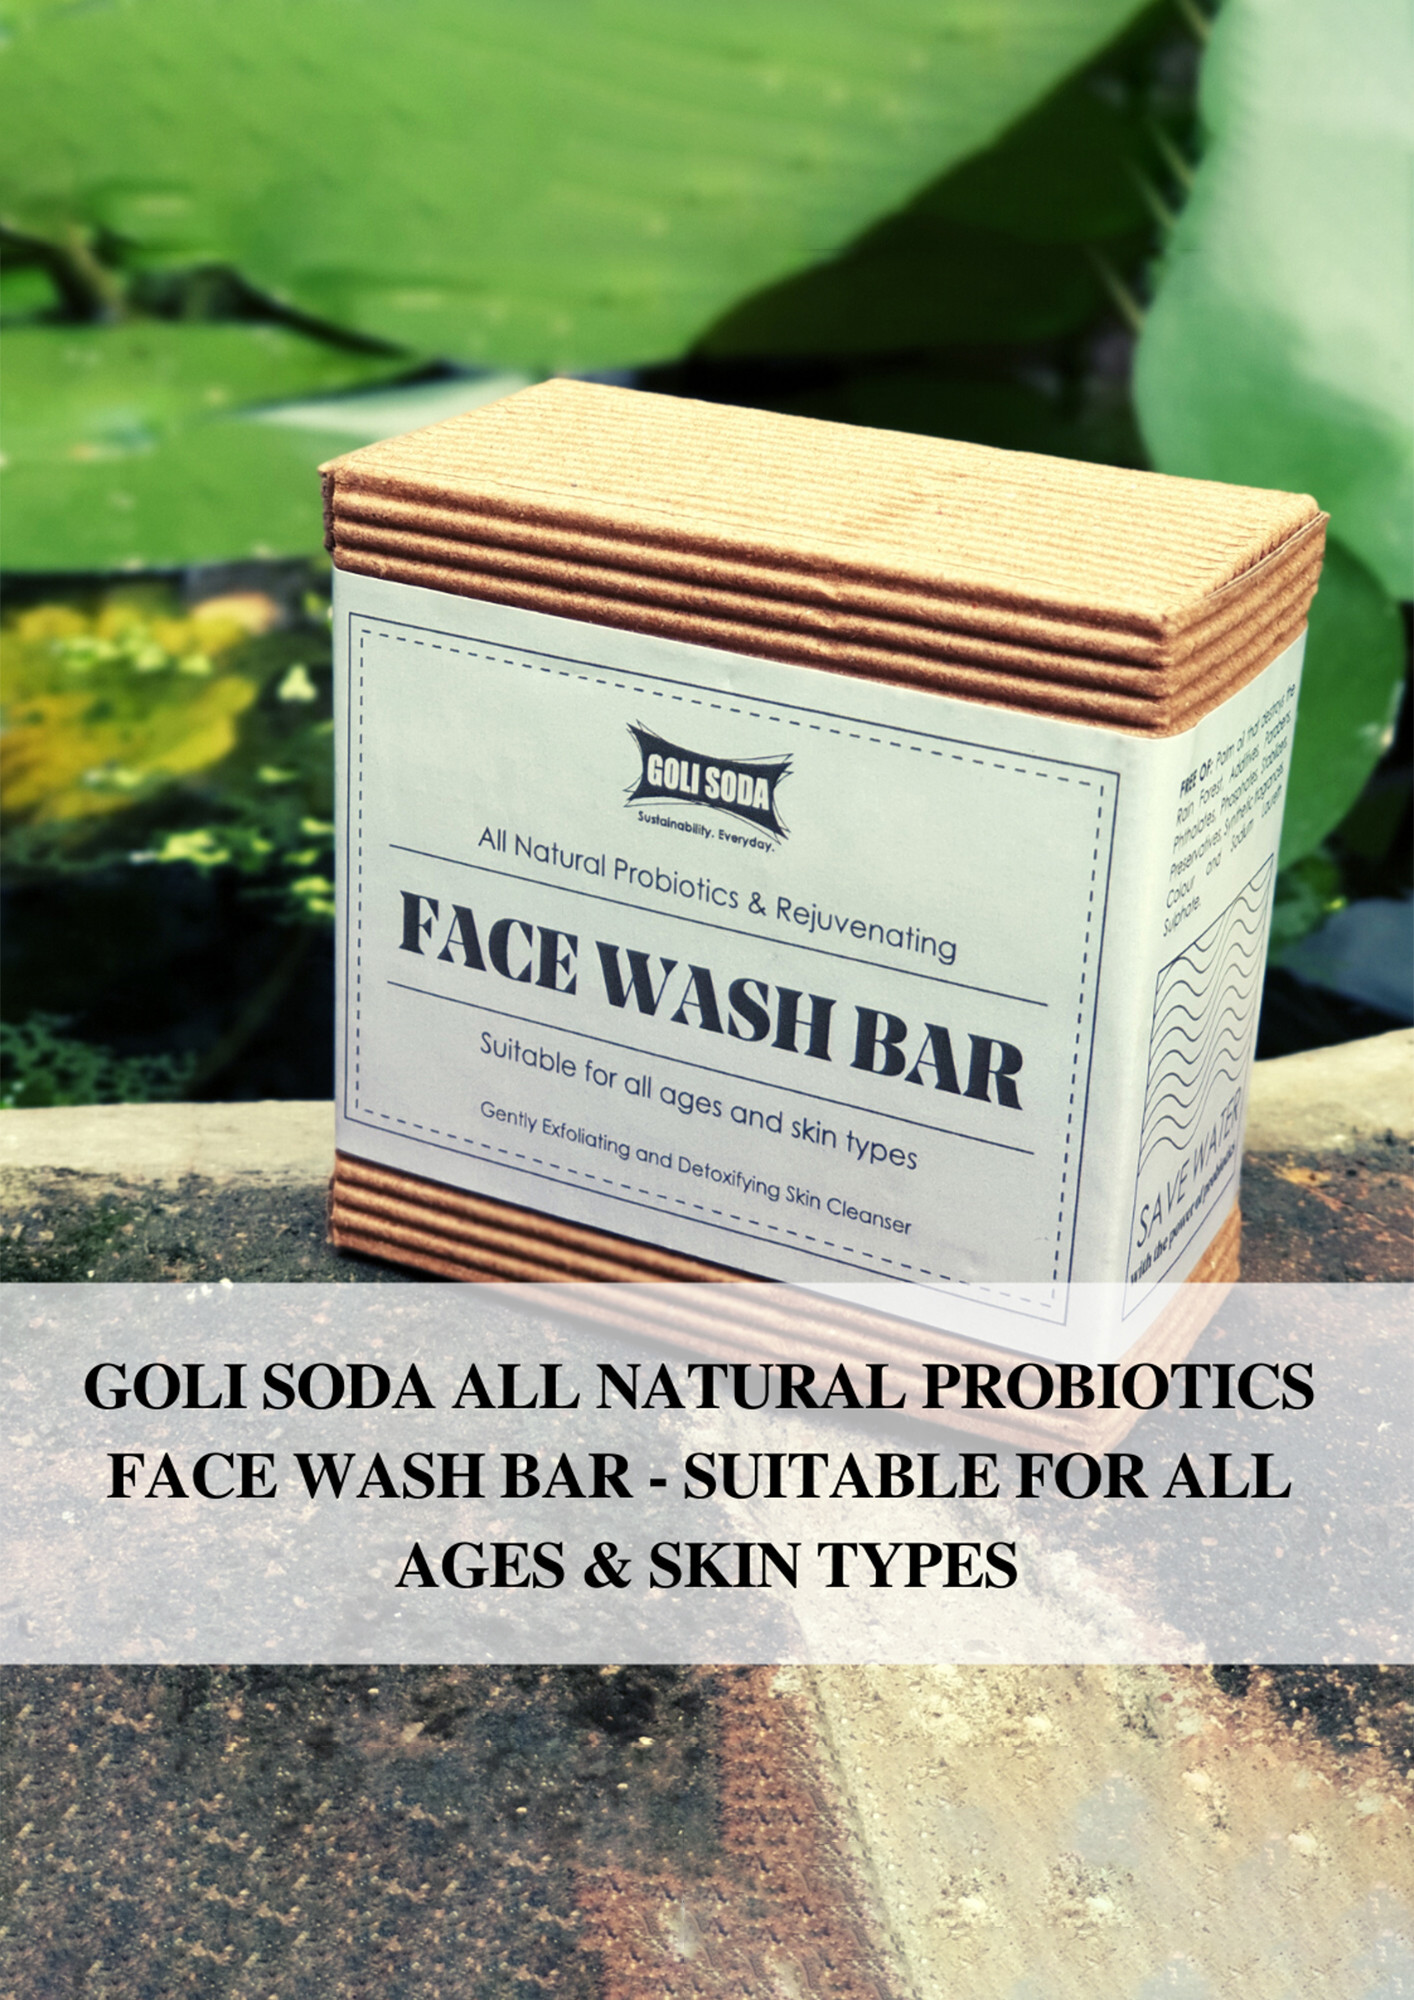 Goli Soda All Natural Probiotics Face Wash Soap - 90 g